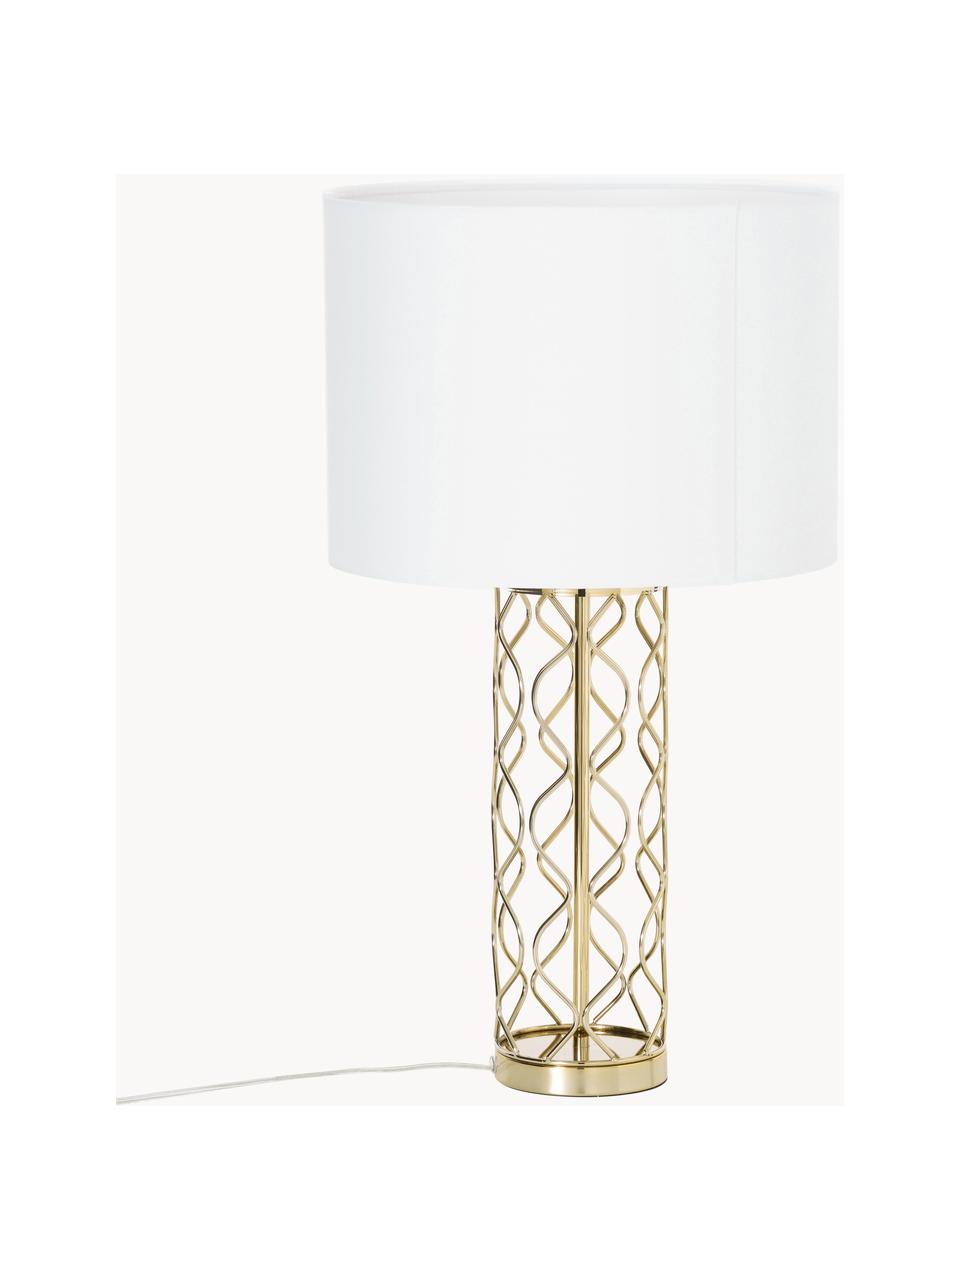 Große Tischlampe Adelaide, Lampenschirm: Textil, Lampenfuß: Metall, Weiß, Goldfarben, Ø 35 x H 62 cm